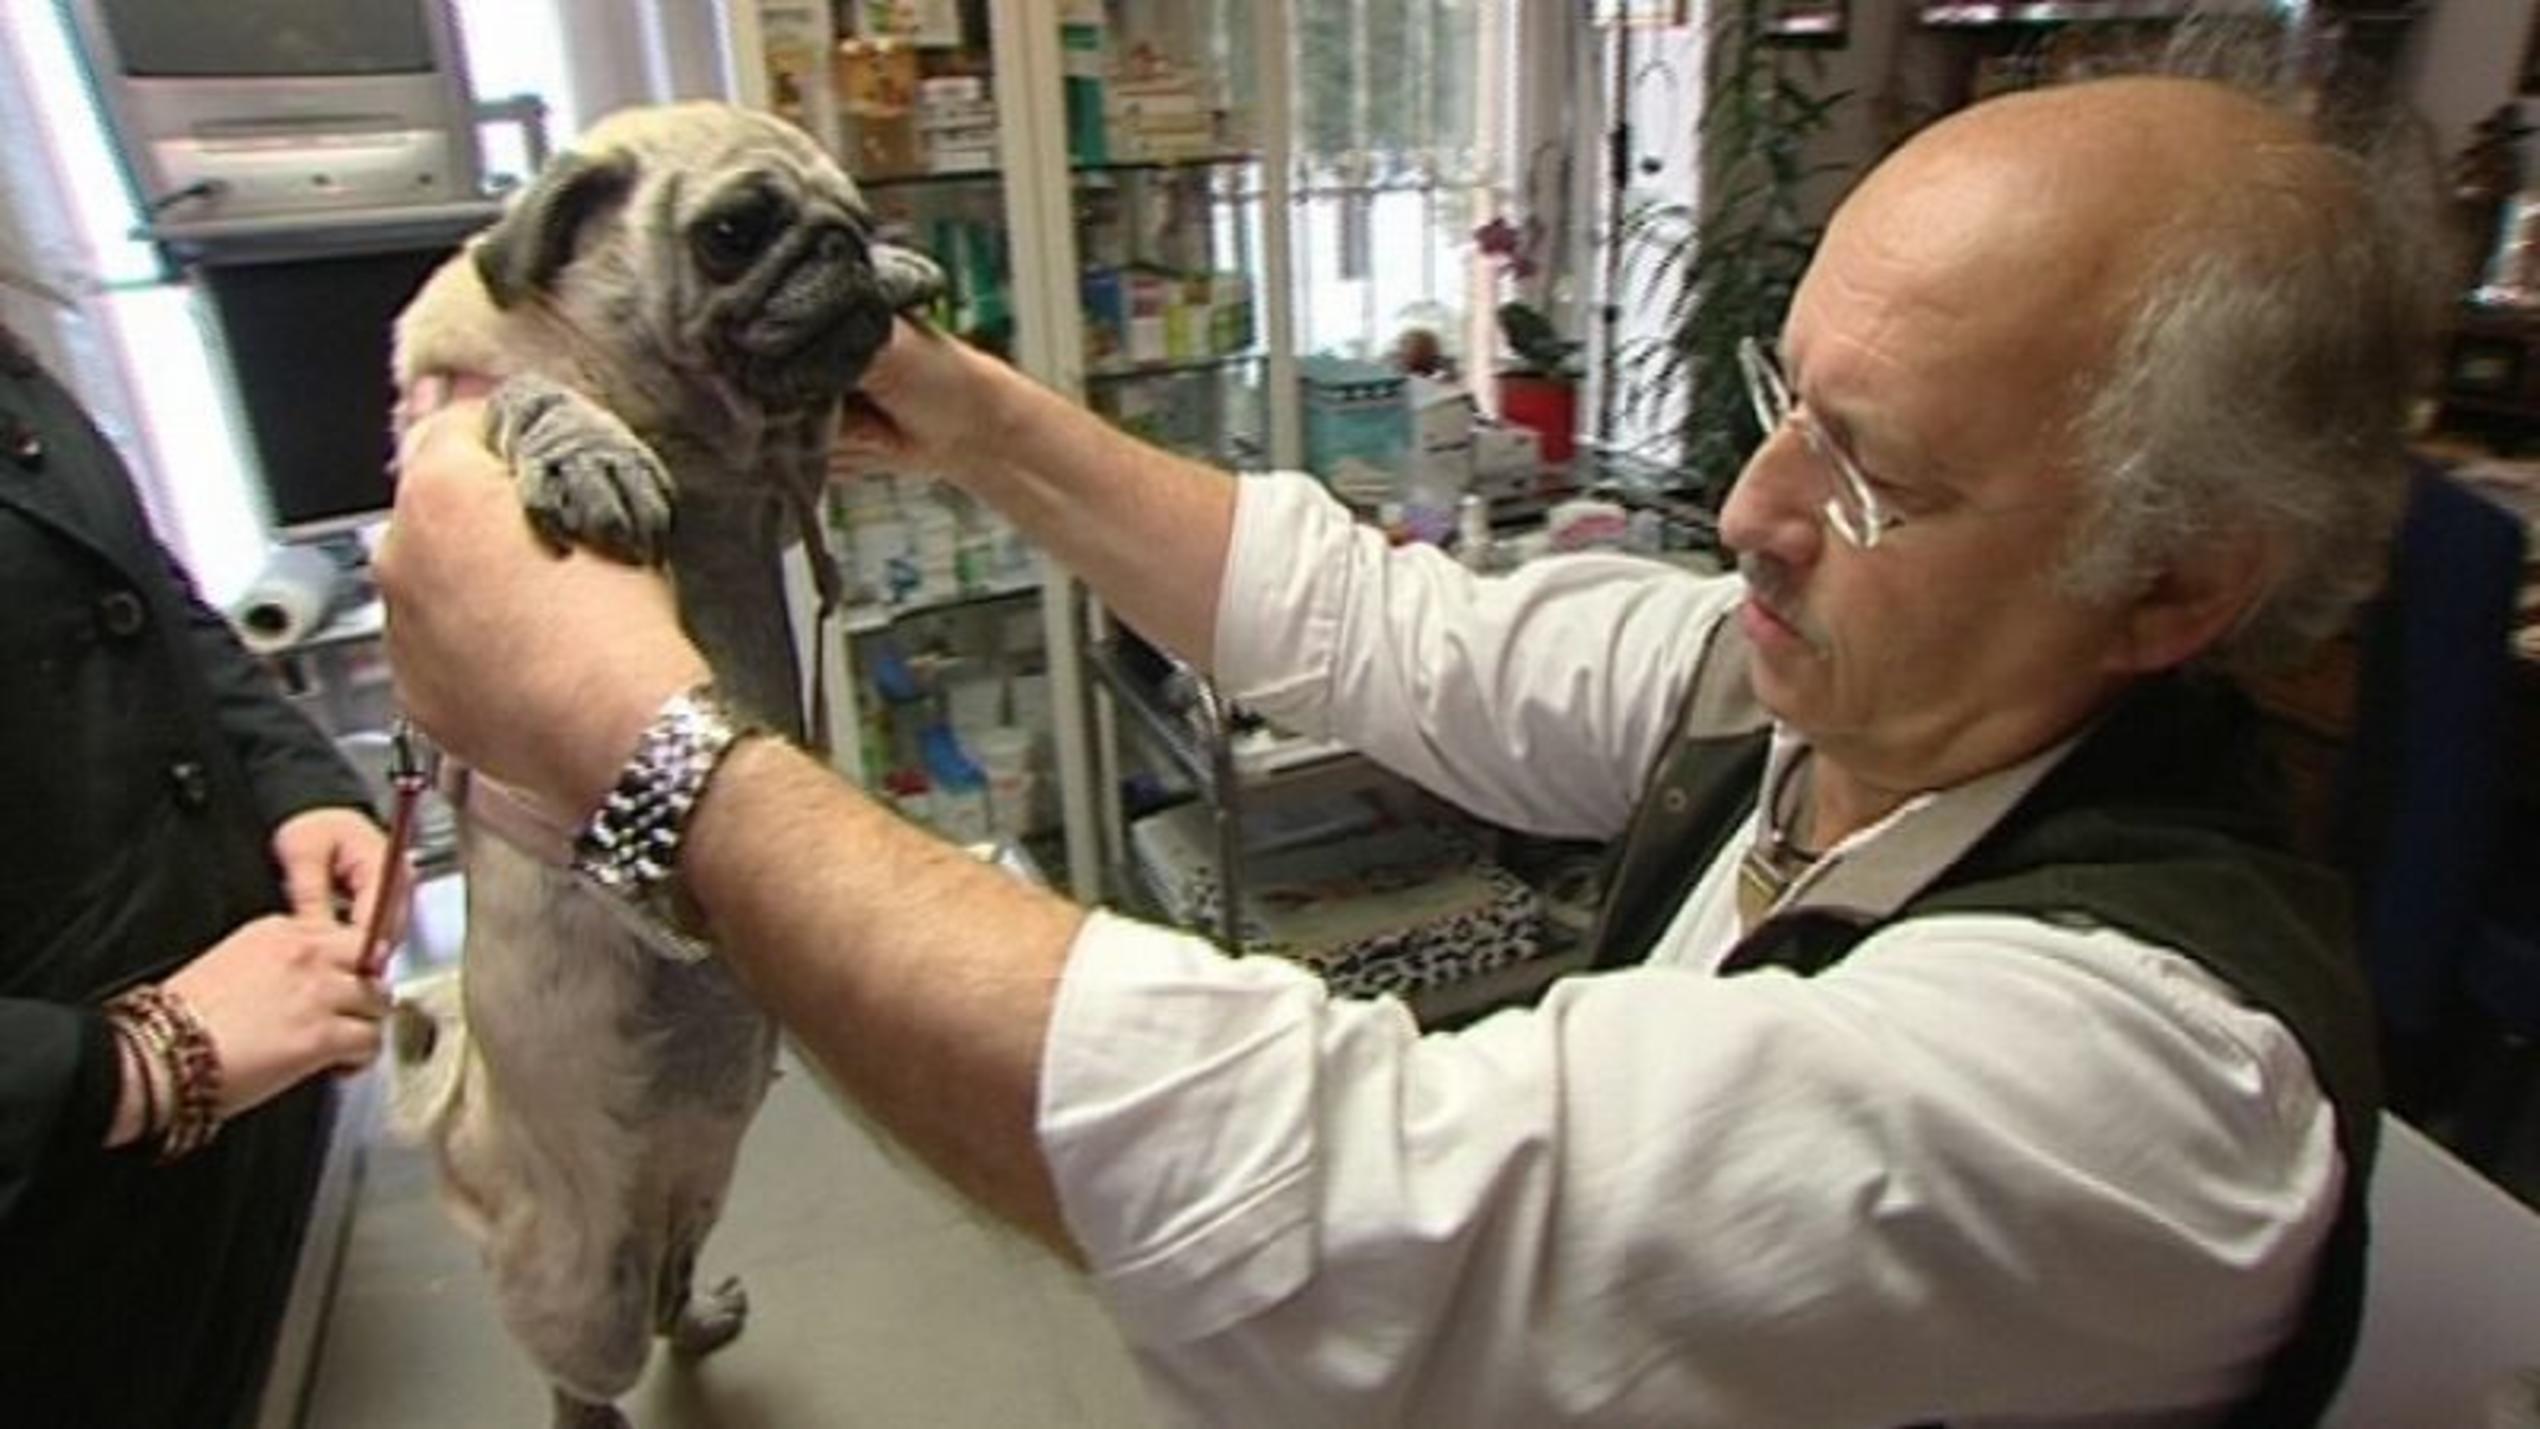 hundkatzemaus-Tierarzt Dr. Wolf untersucht einen kranken Mops. Foto: VOX/VP